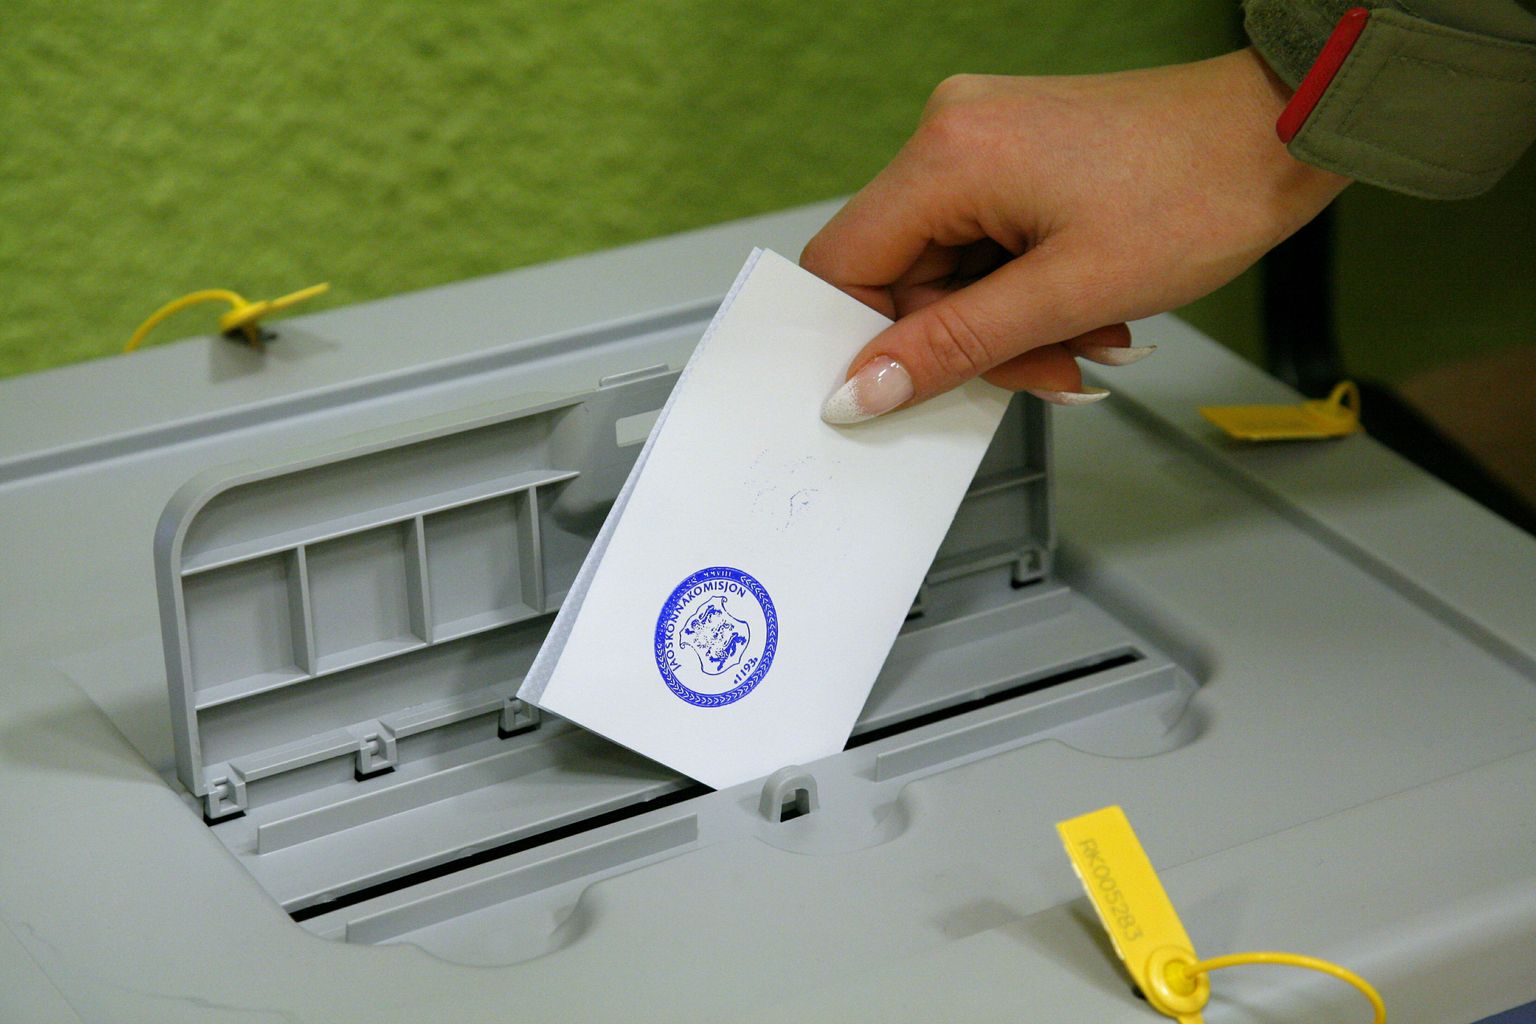 Väikseim valimissaak oli Pärnumaal kaheksa häält.